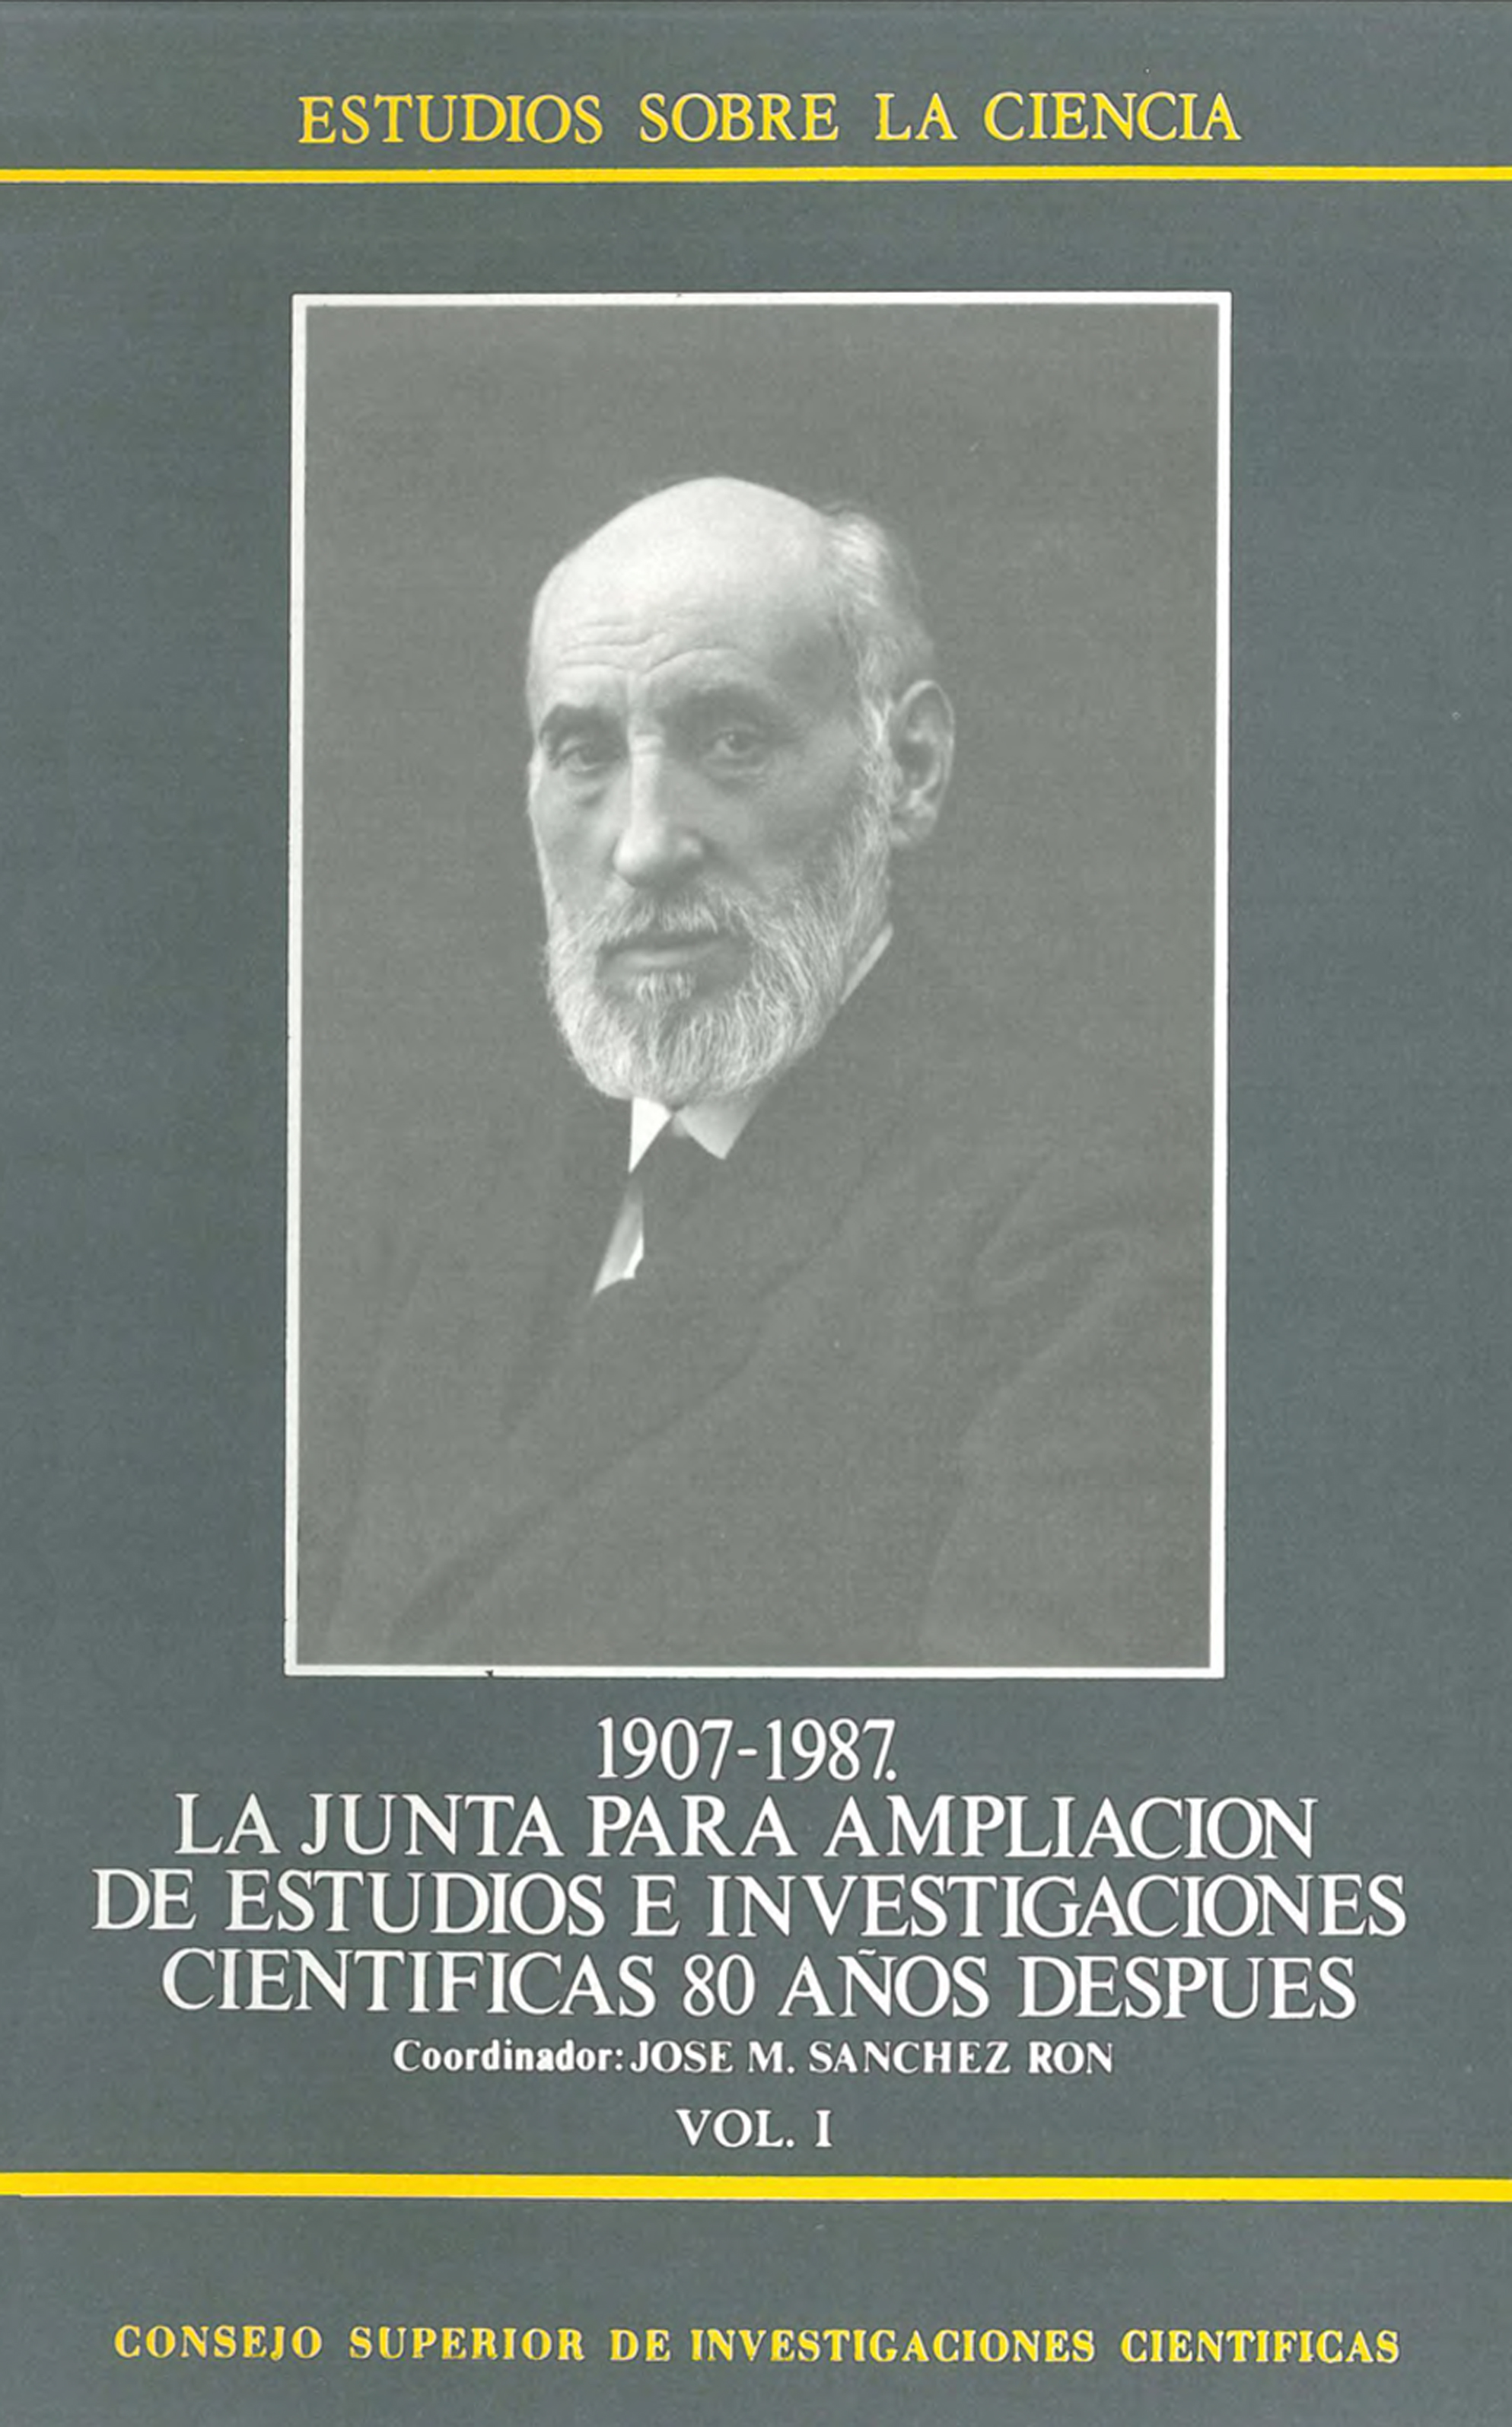 1907-1987, la Junta para Ampliación de Estudios e Investigaciones Científicas 80 años después. Vol. I